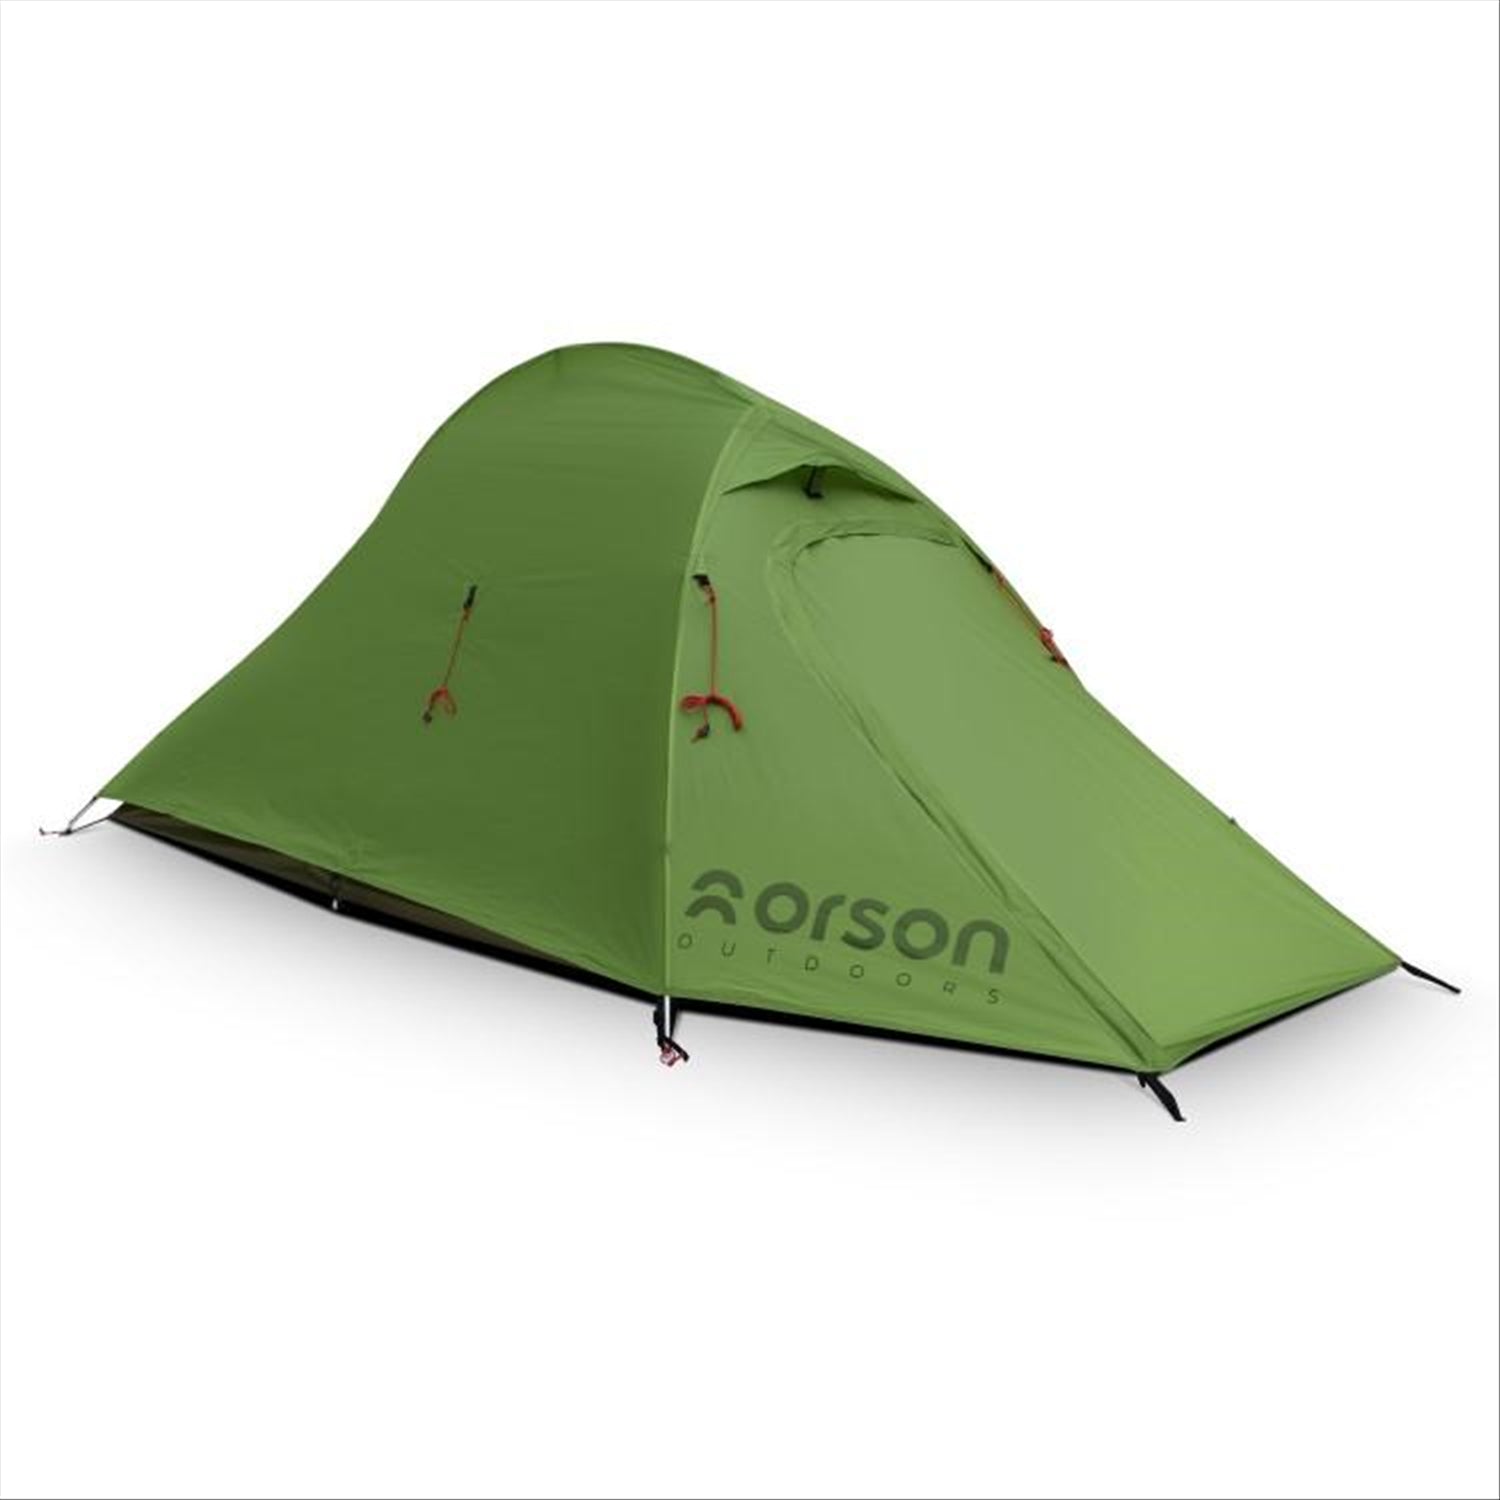 Orson Tracker 2 - Ripstop Silnylon 2 Person Camping Tent 1.7kg